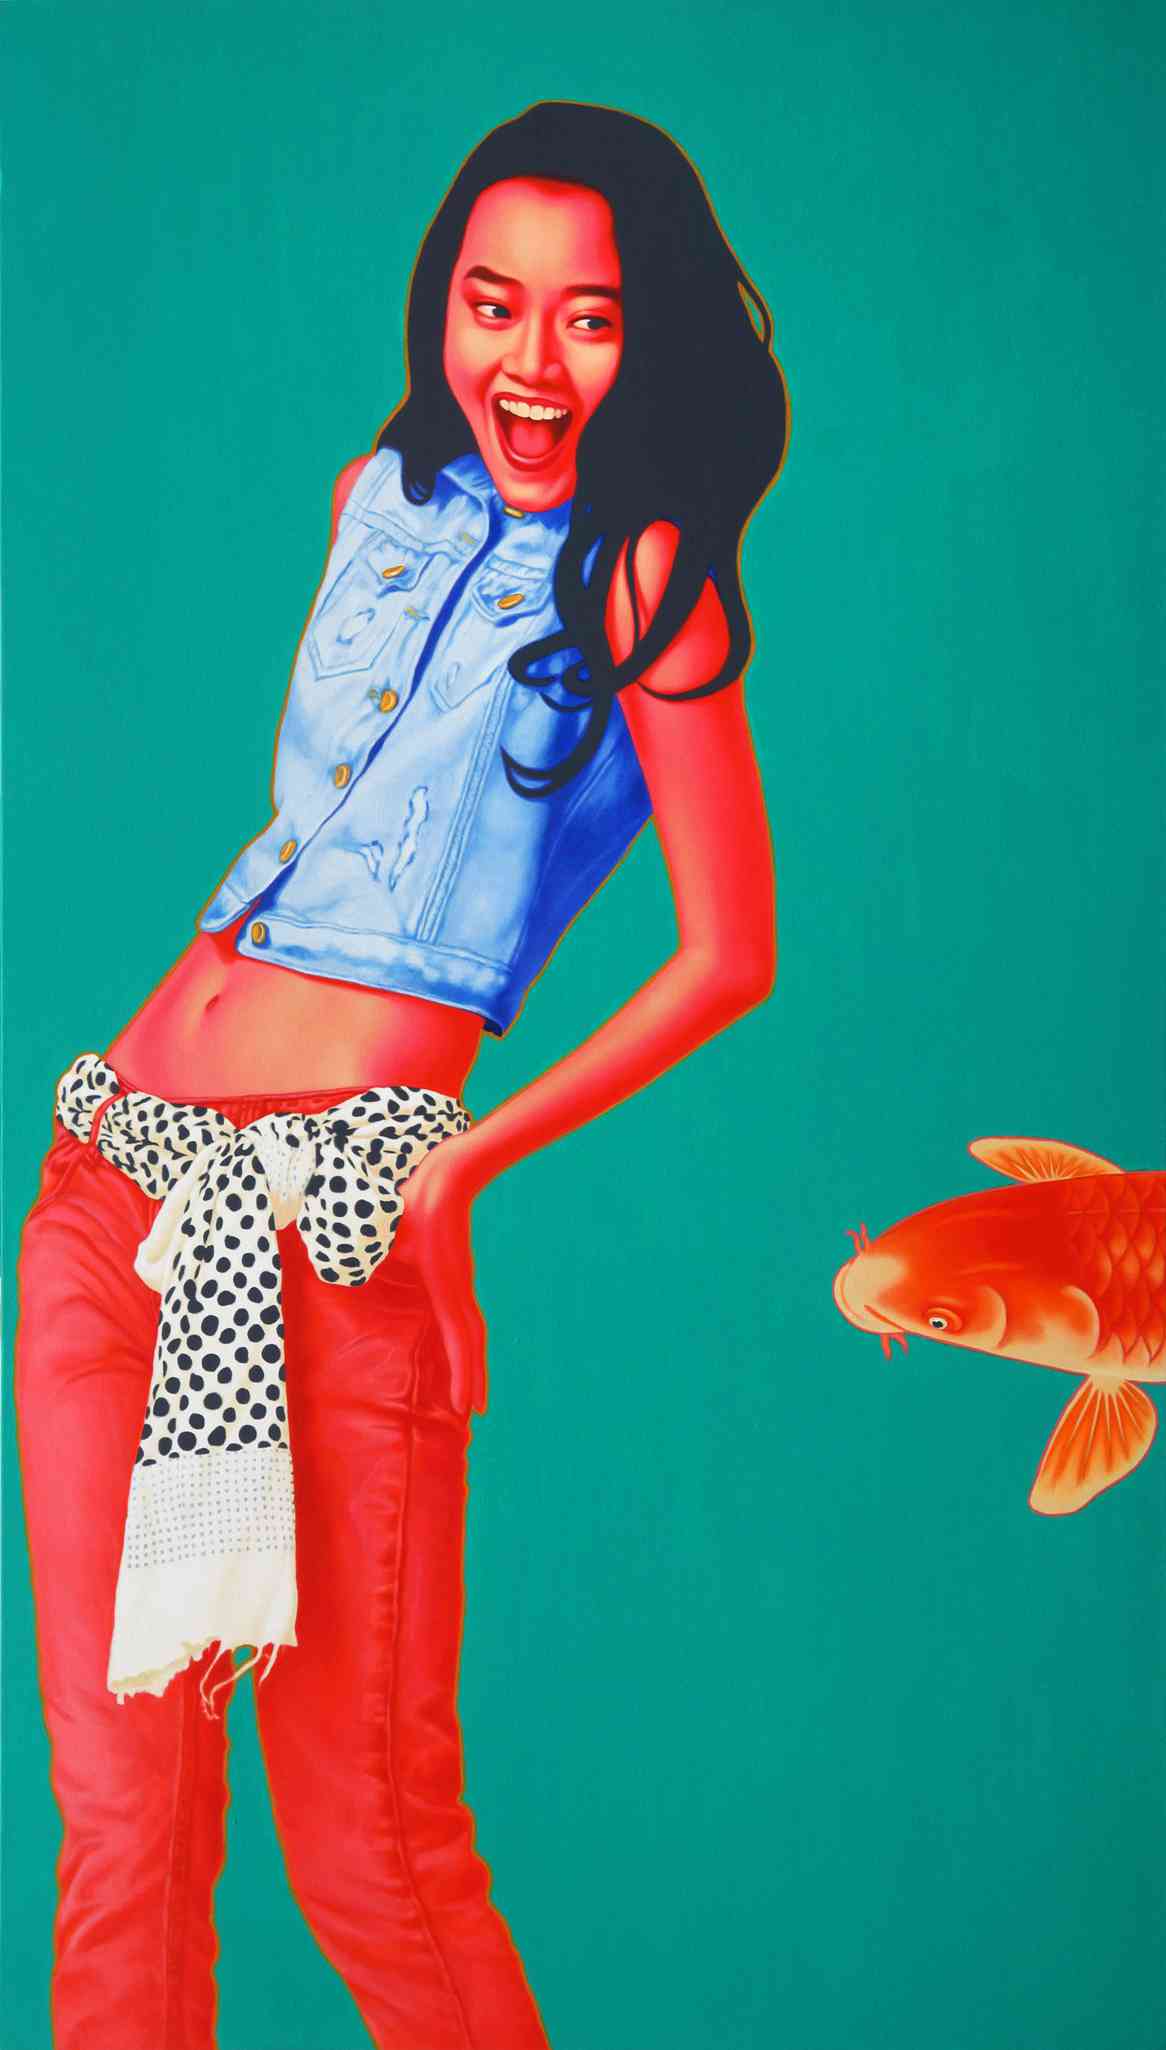 鱼·女孩 FISH GIRL 210X120cm 布面油画 OIL ON CANVAS